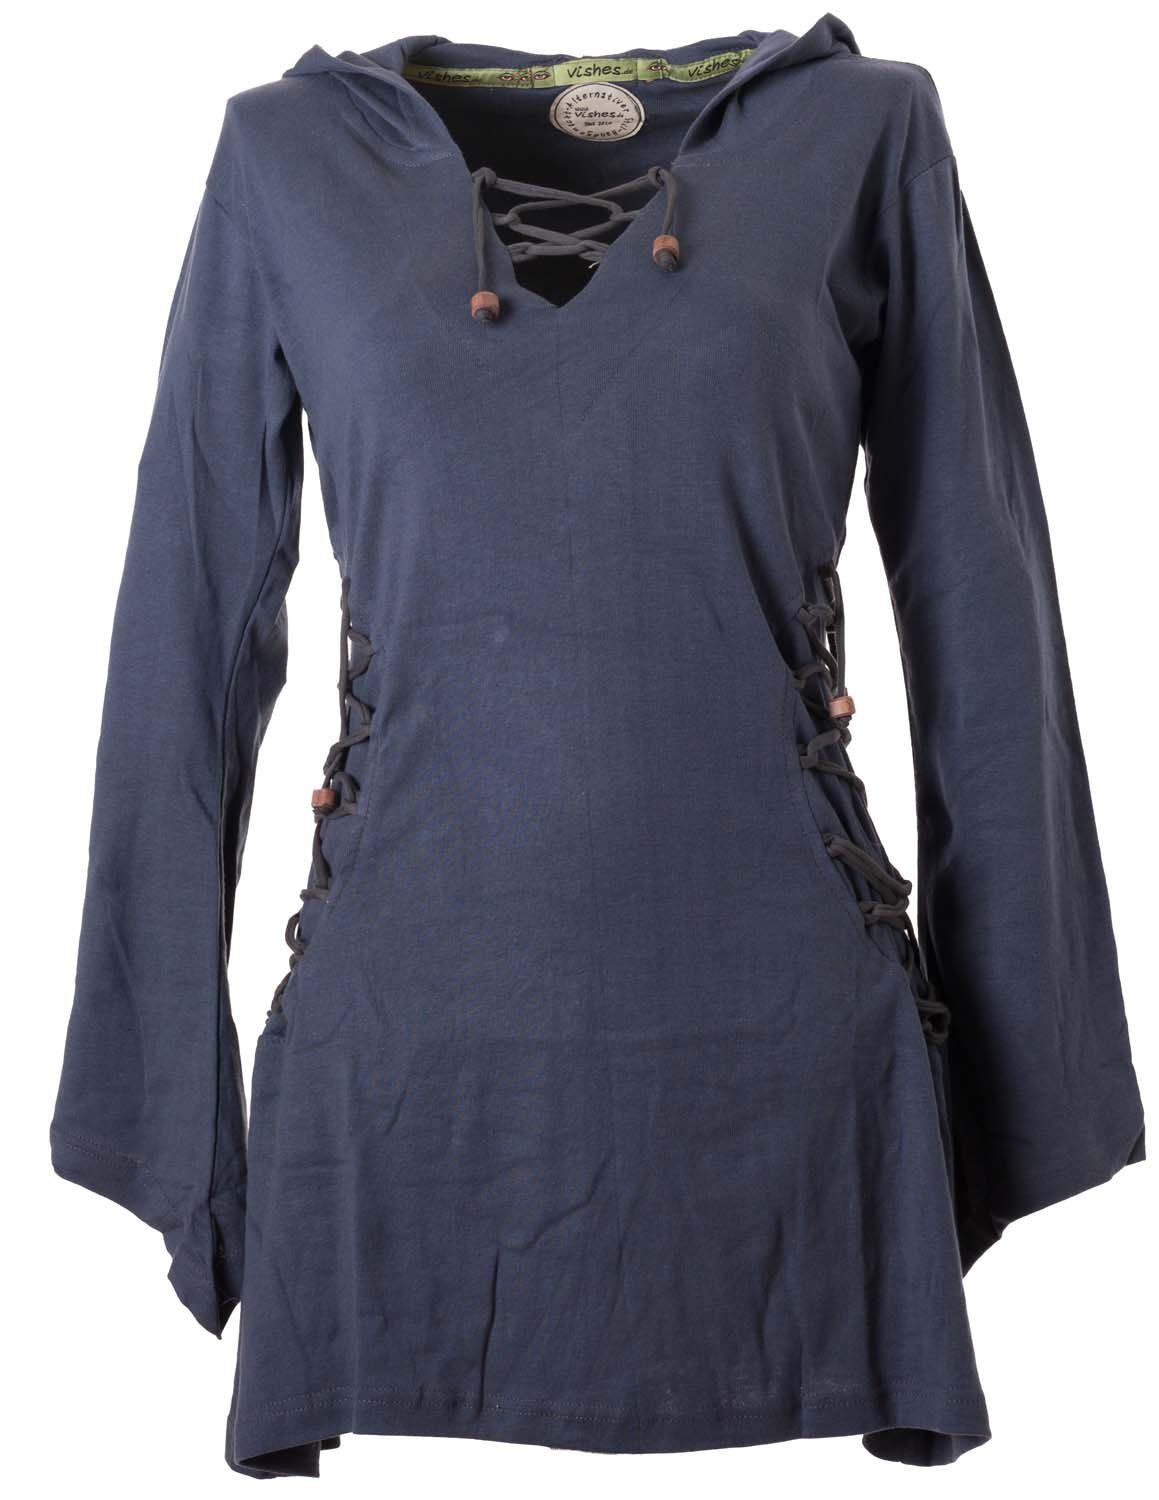 Vishes Zipfelkleid Elfenkleid mit Zipfelkapuze Bändern zum Schnüren Ethno, Hoody, Gothik Style grau | Kleider